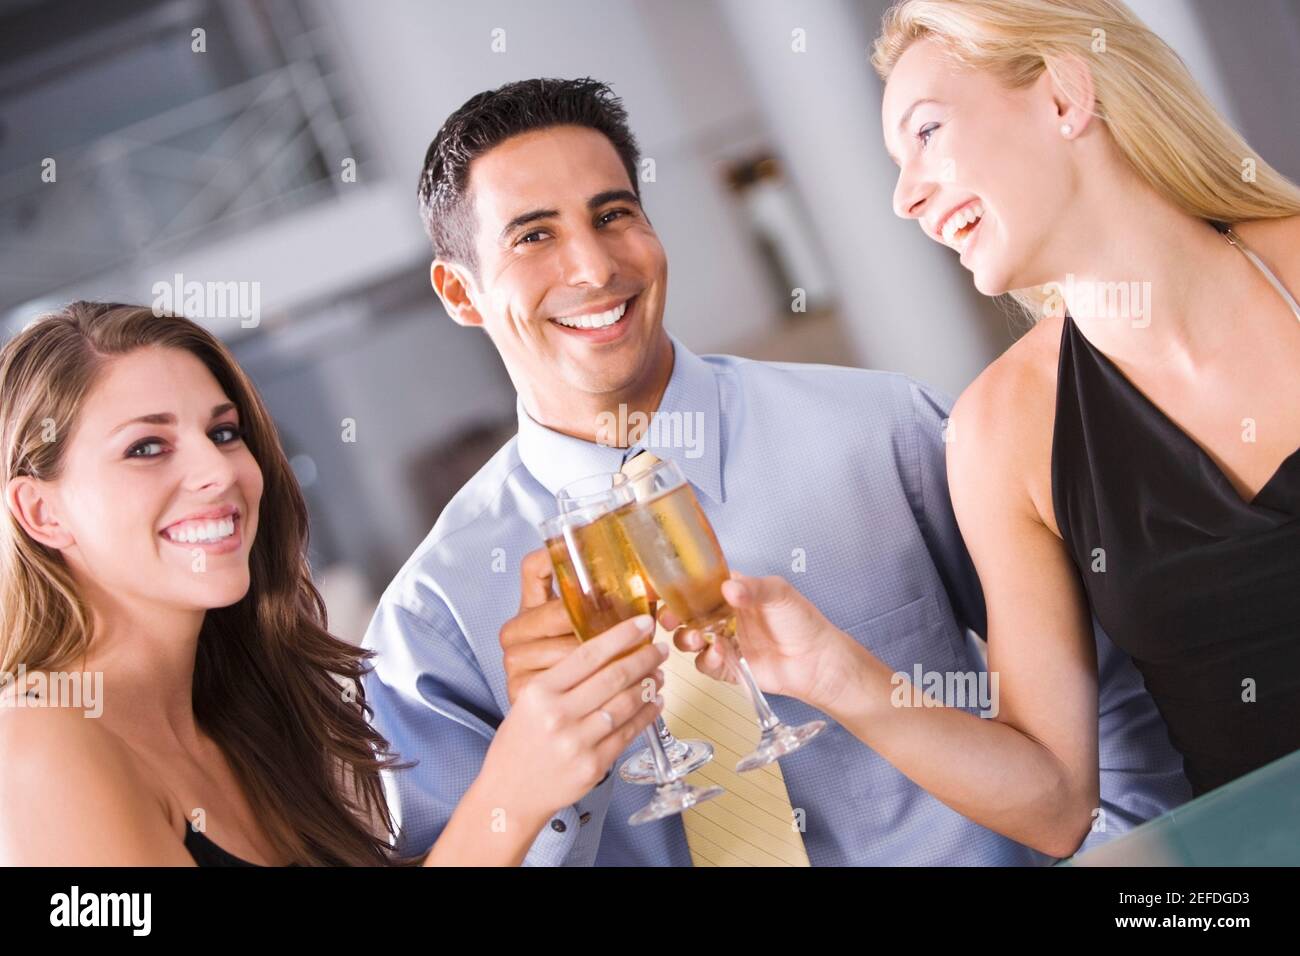 Retrato de un hombre adulto medio levantando una tostada con dos mujeres jóvenes Foto de stock